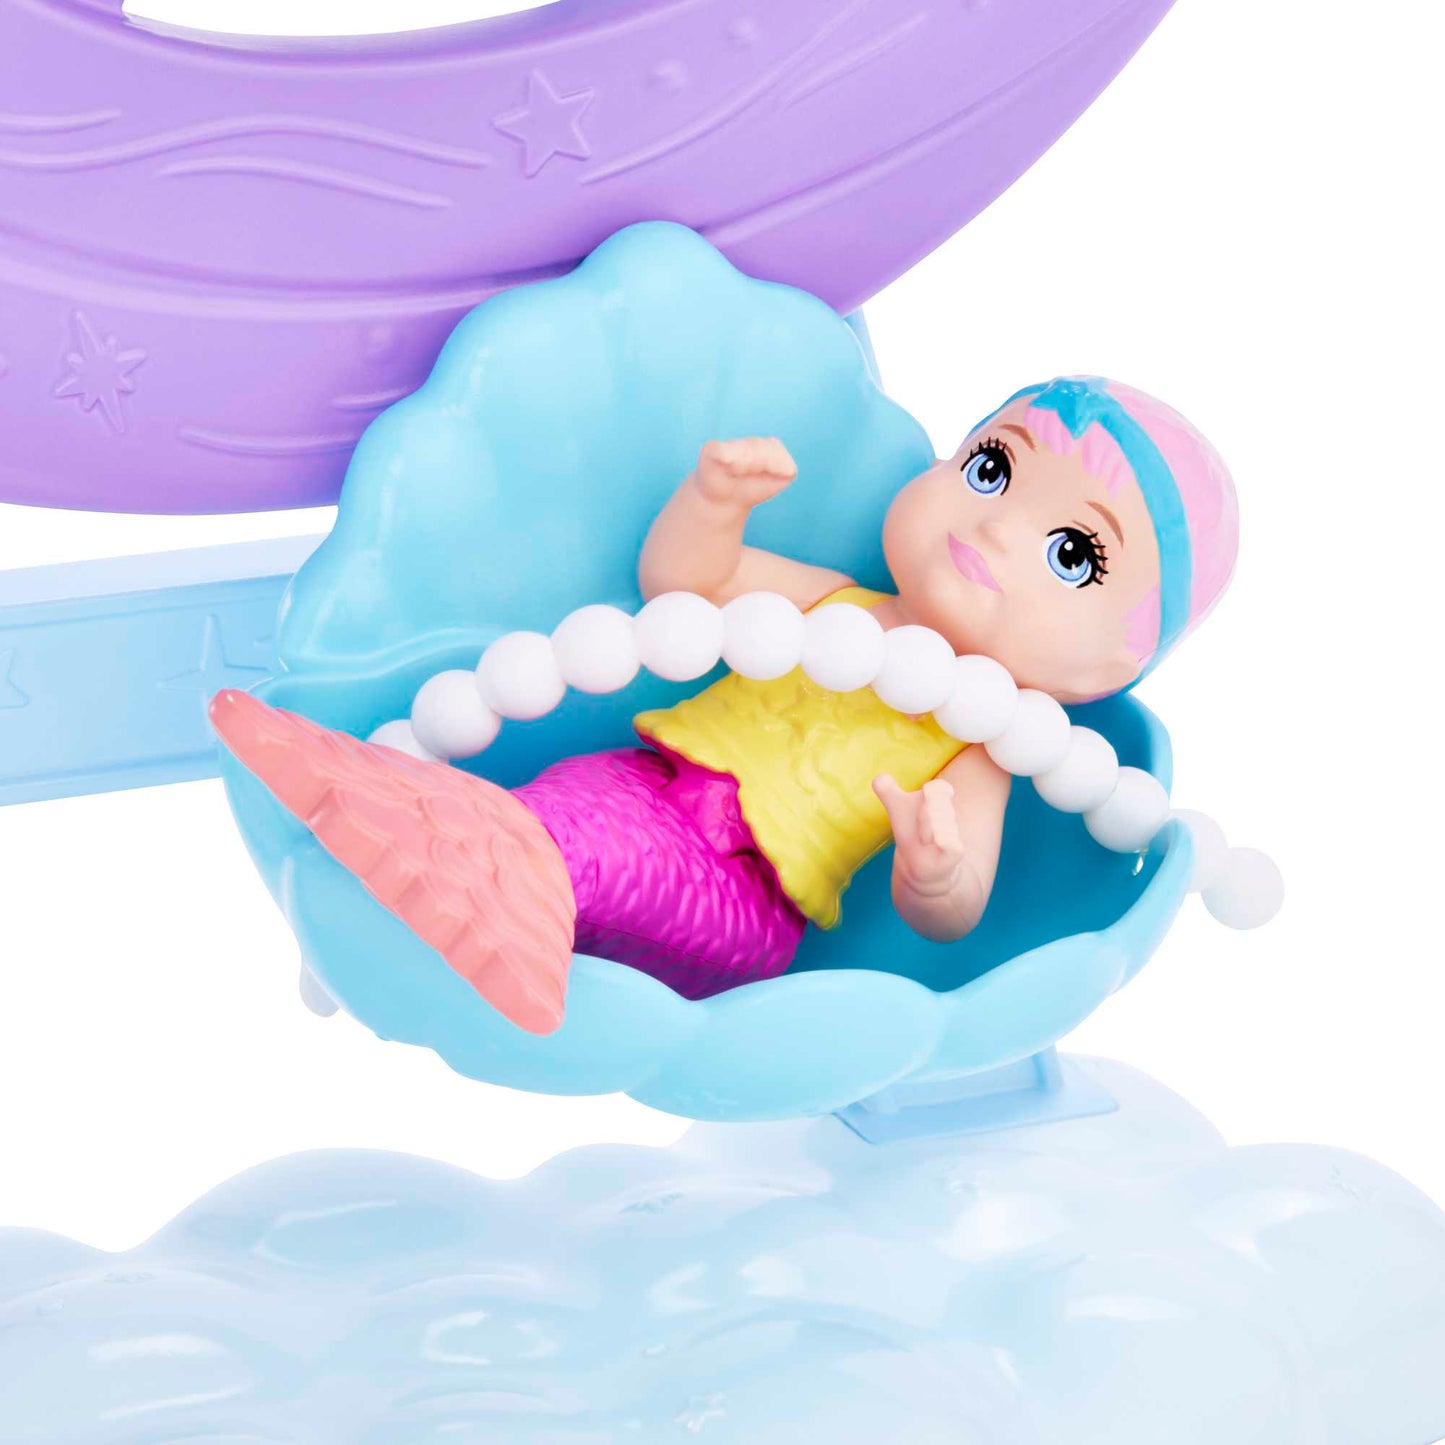 Barbie - Mermaid Doll, Nurturing Playset